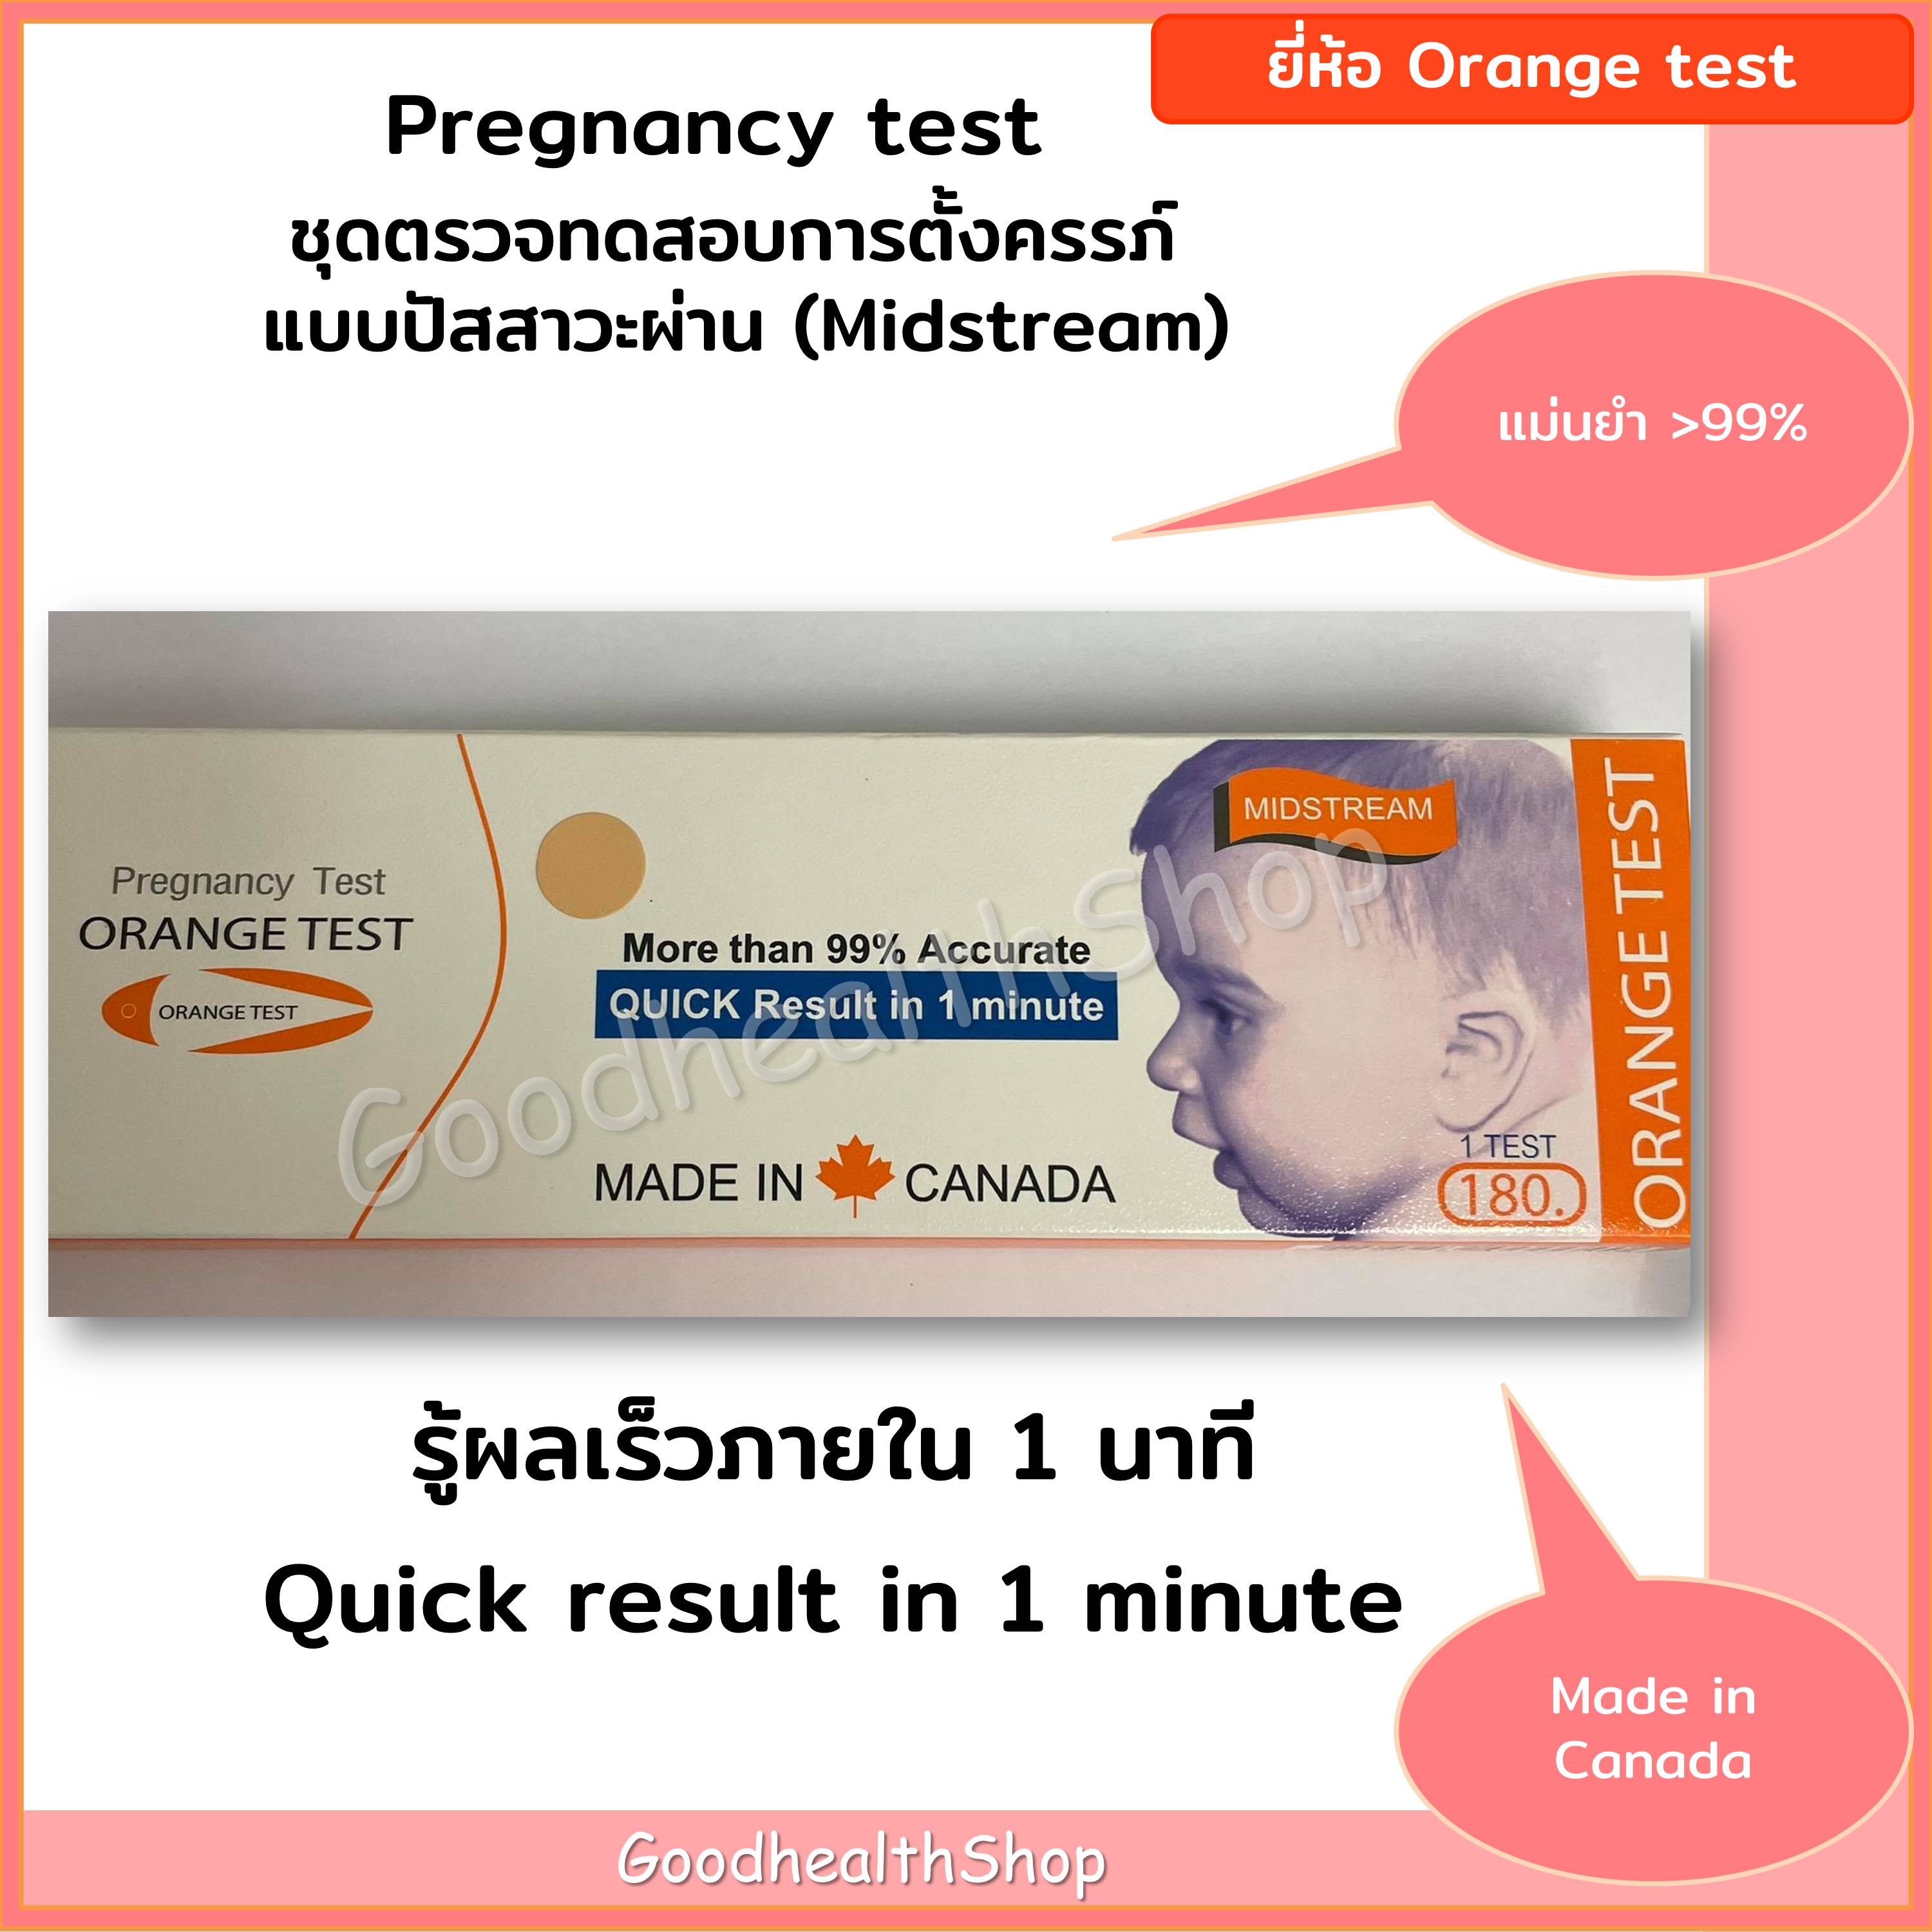 ที่ตรวจครรภ์ Orange Test MIDSTREAM Pregnancy Test ชุดทดสอบการตั้งครรภ์ แบบปัสสาวะผ่าน แม่นยำมากกว่า 99% รู้ผลใน 1นาที 1 กล่อง